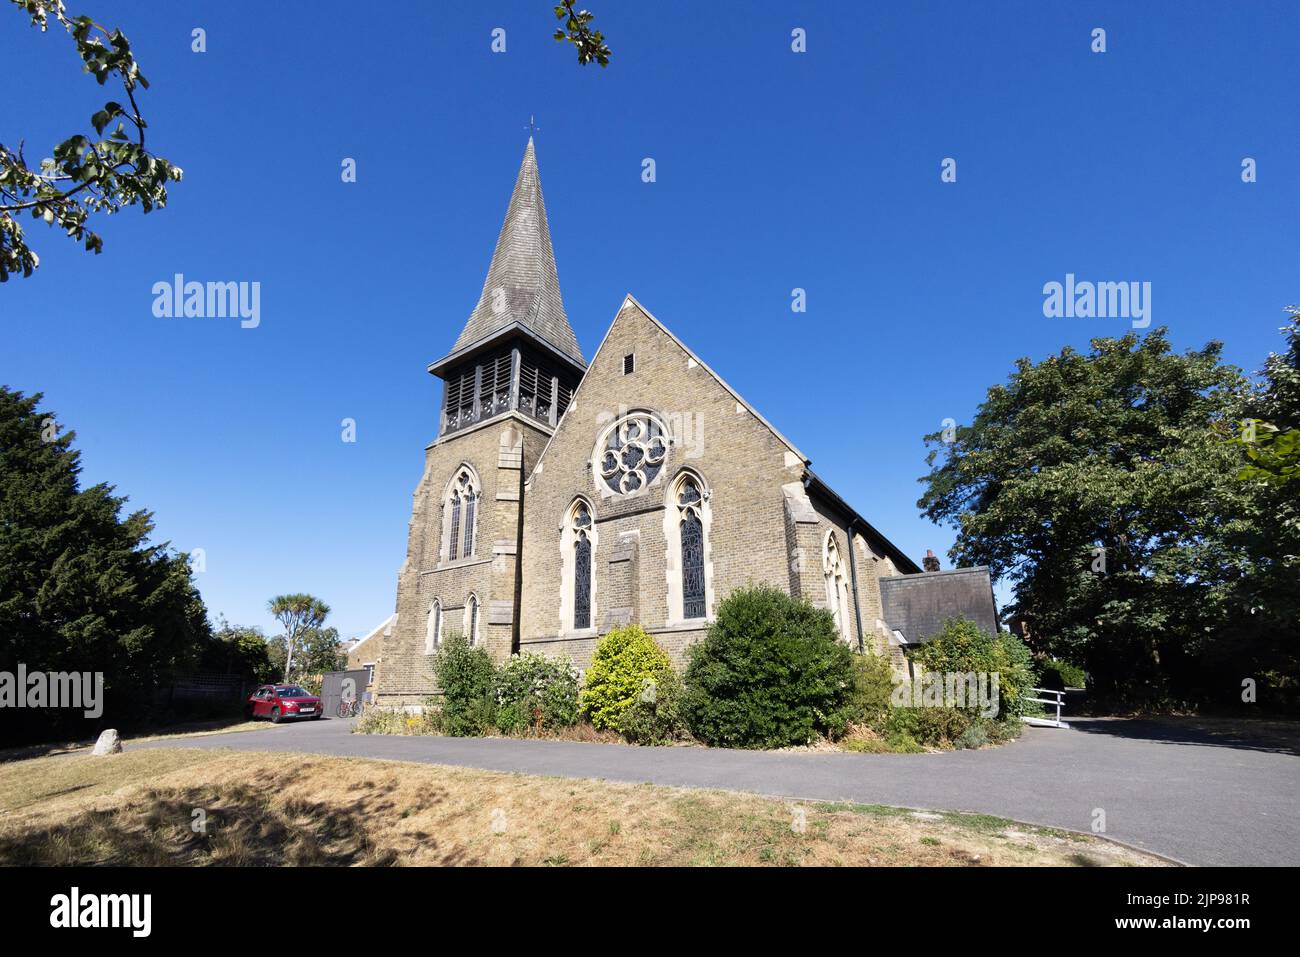 London anglikanische Kirche; Christ Church, Colliers Wood London Exterieur an einem sonnigen Sommertag, Colliers Wood, Merton, London UK Stockfoto